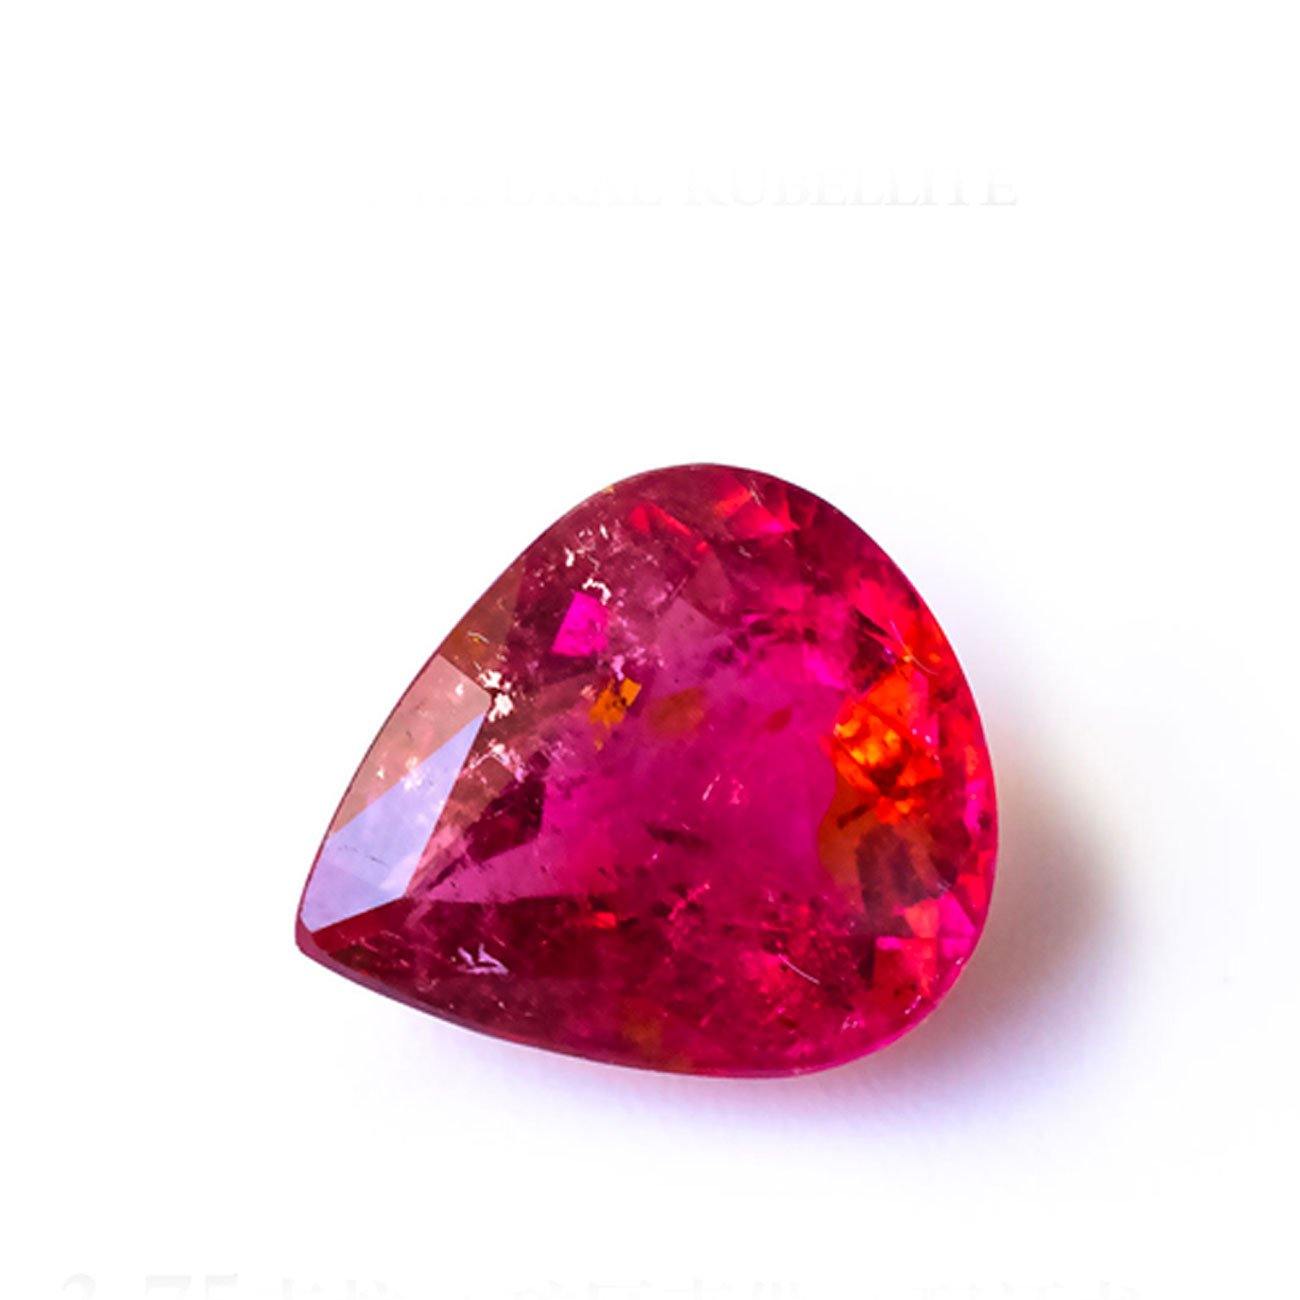 3.75 Carats Natural Rubellite Tourmaline Pear Cut Loose Gemstone - Modern Gem Jewelry 